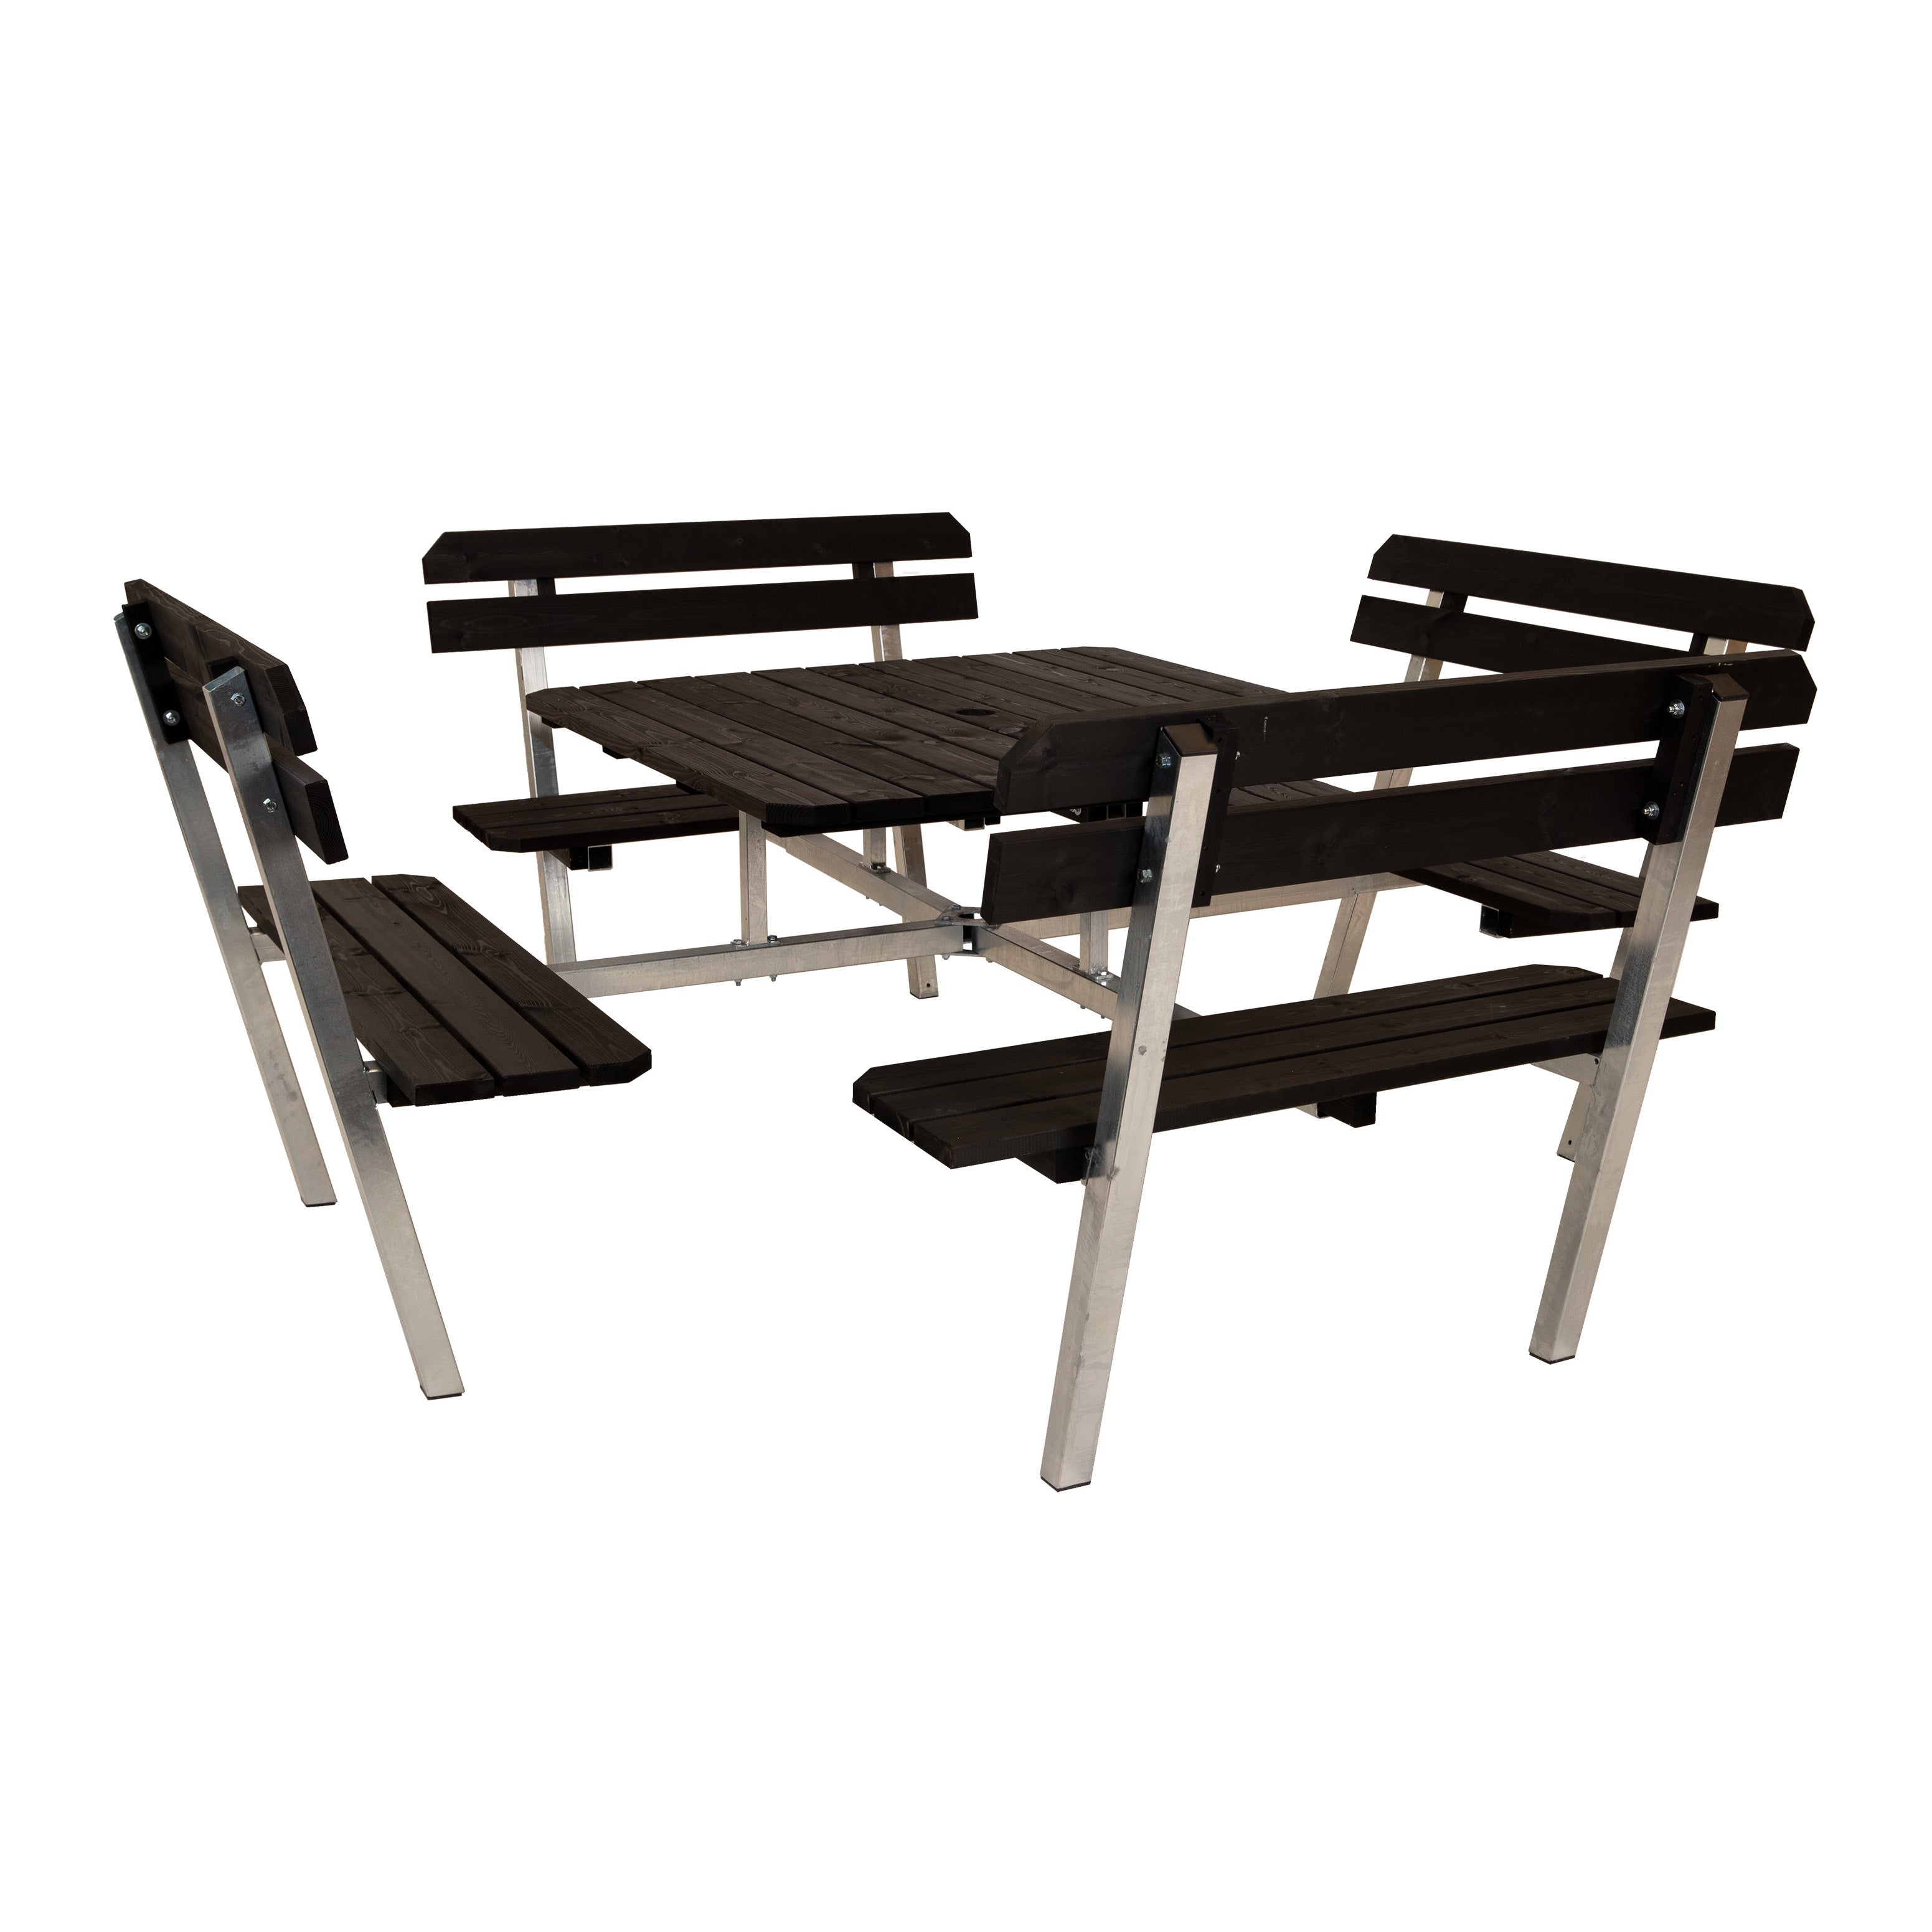 Gartentisch mit Metallgestell für Outdoorbereich wetterfest aus hochwertigem Holz in schwarz